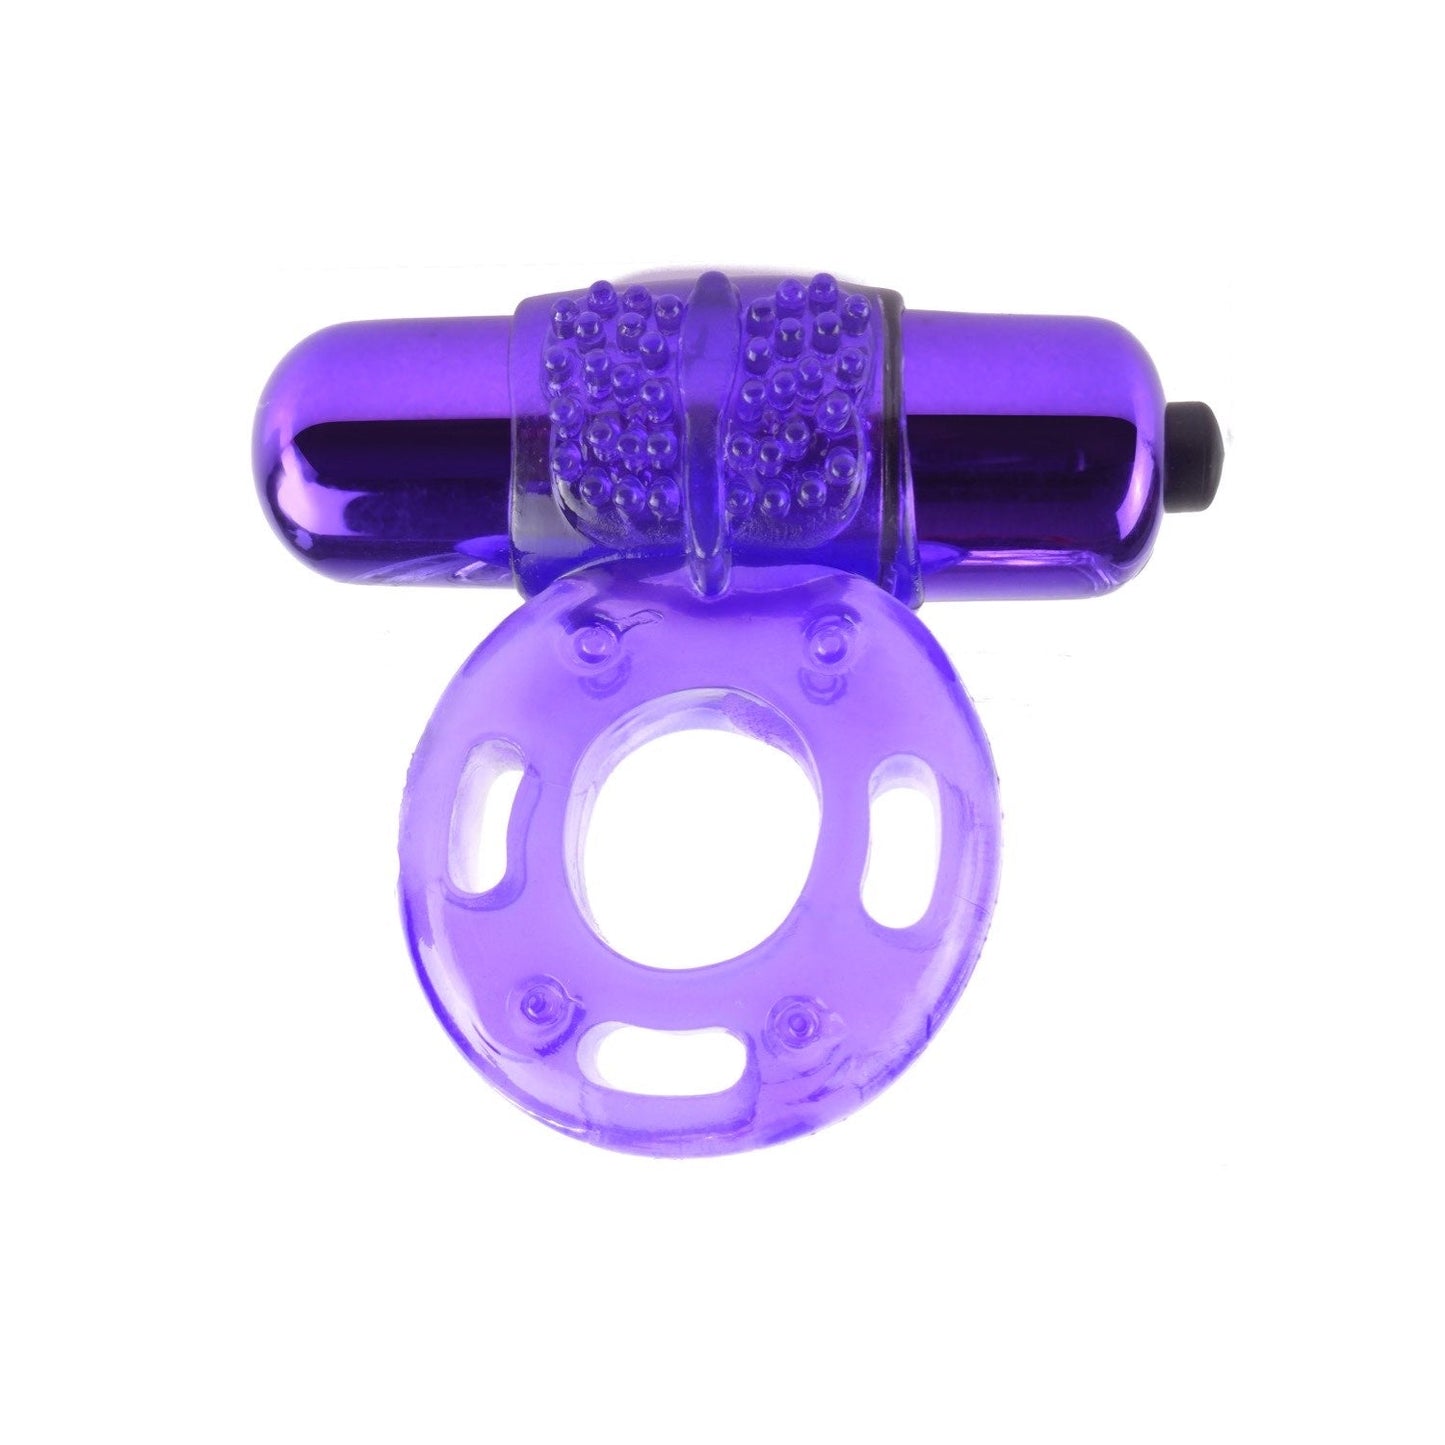 Vibrating Super Ring - Purple Vibrating Cock Ring